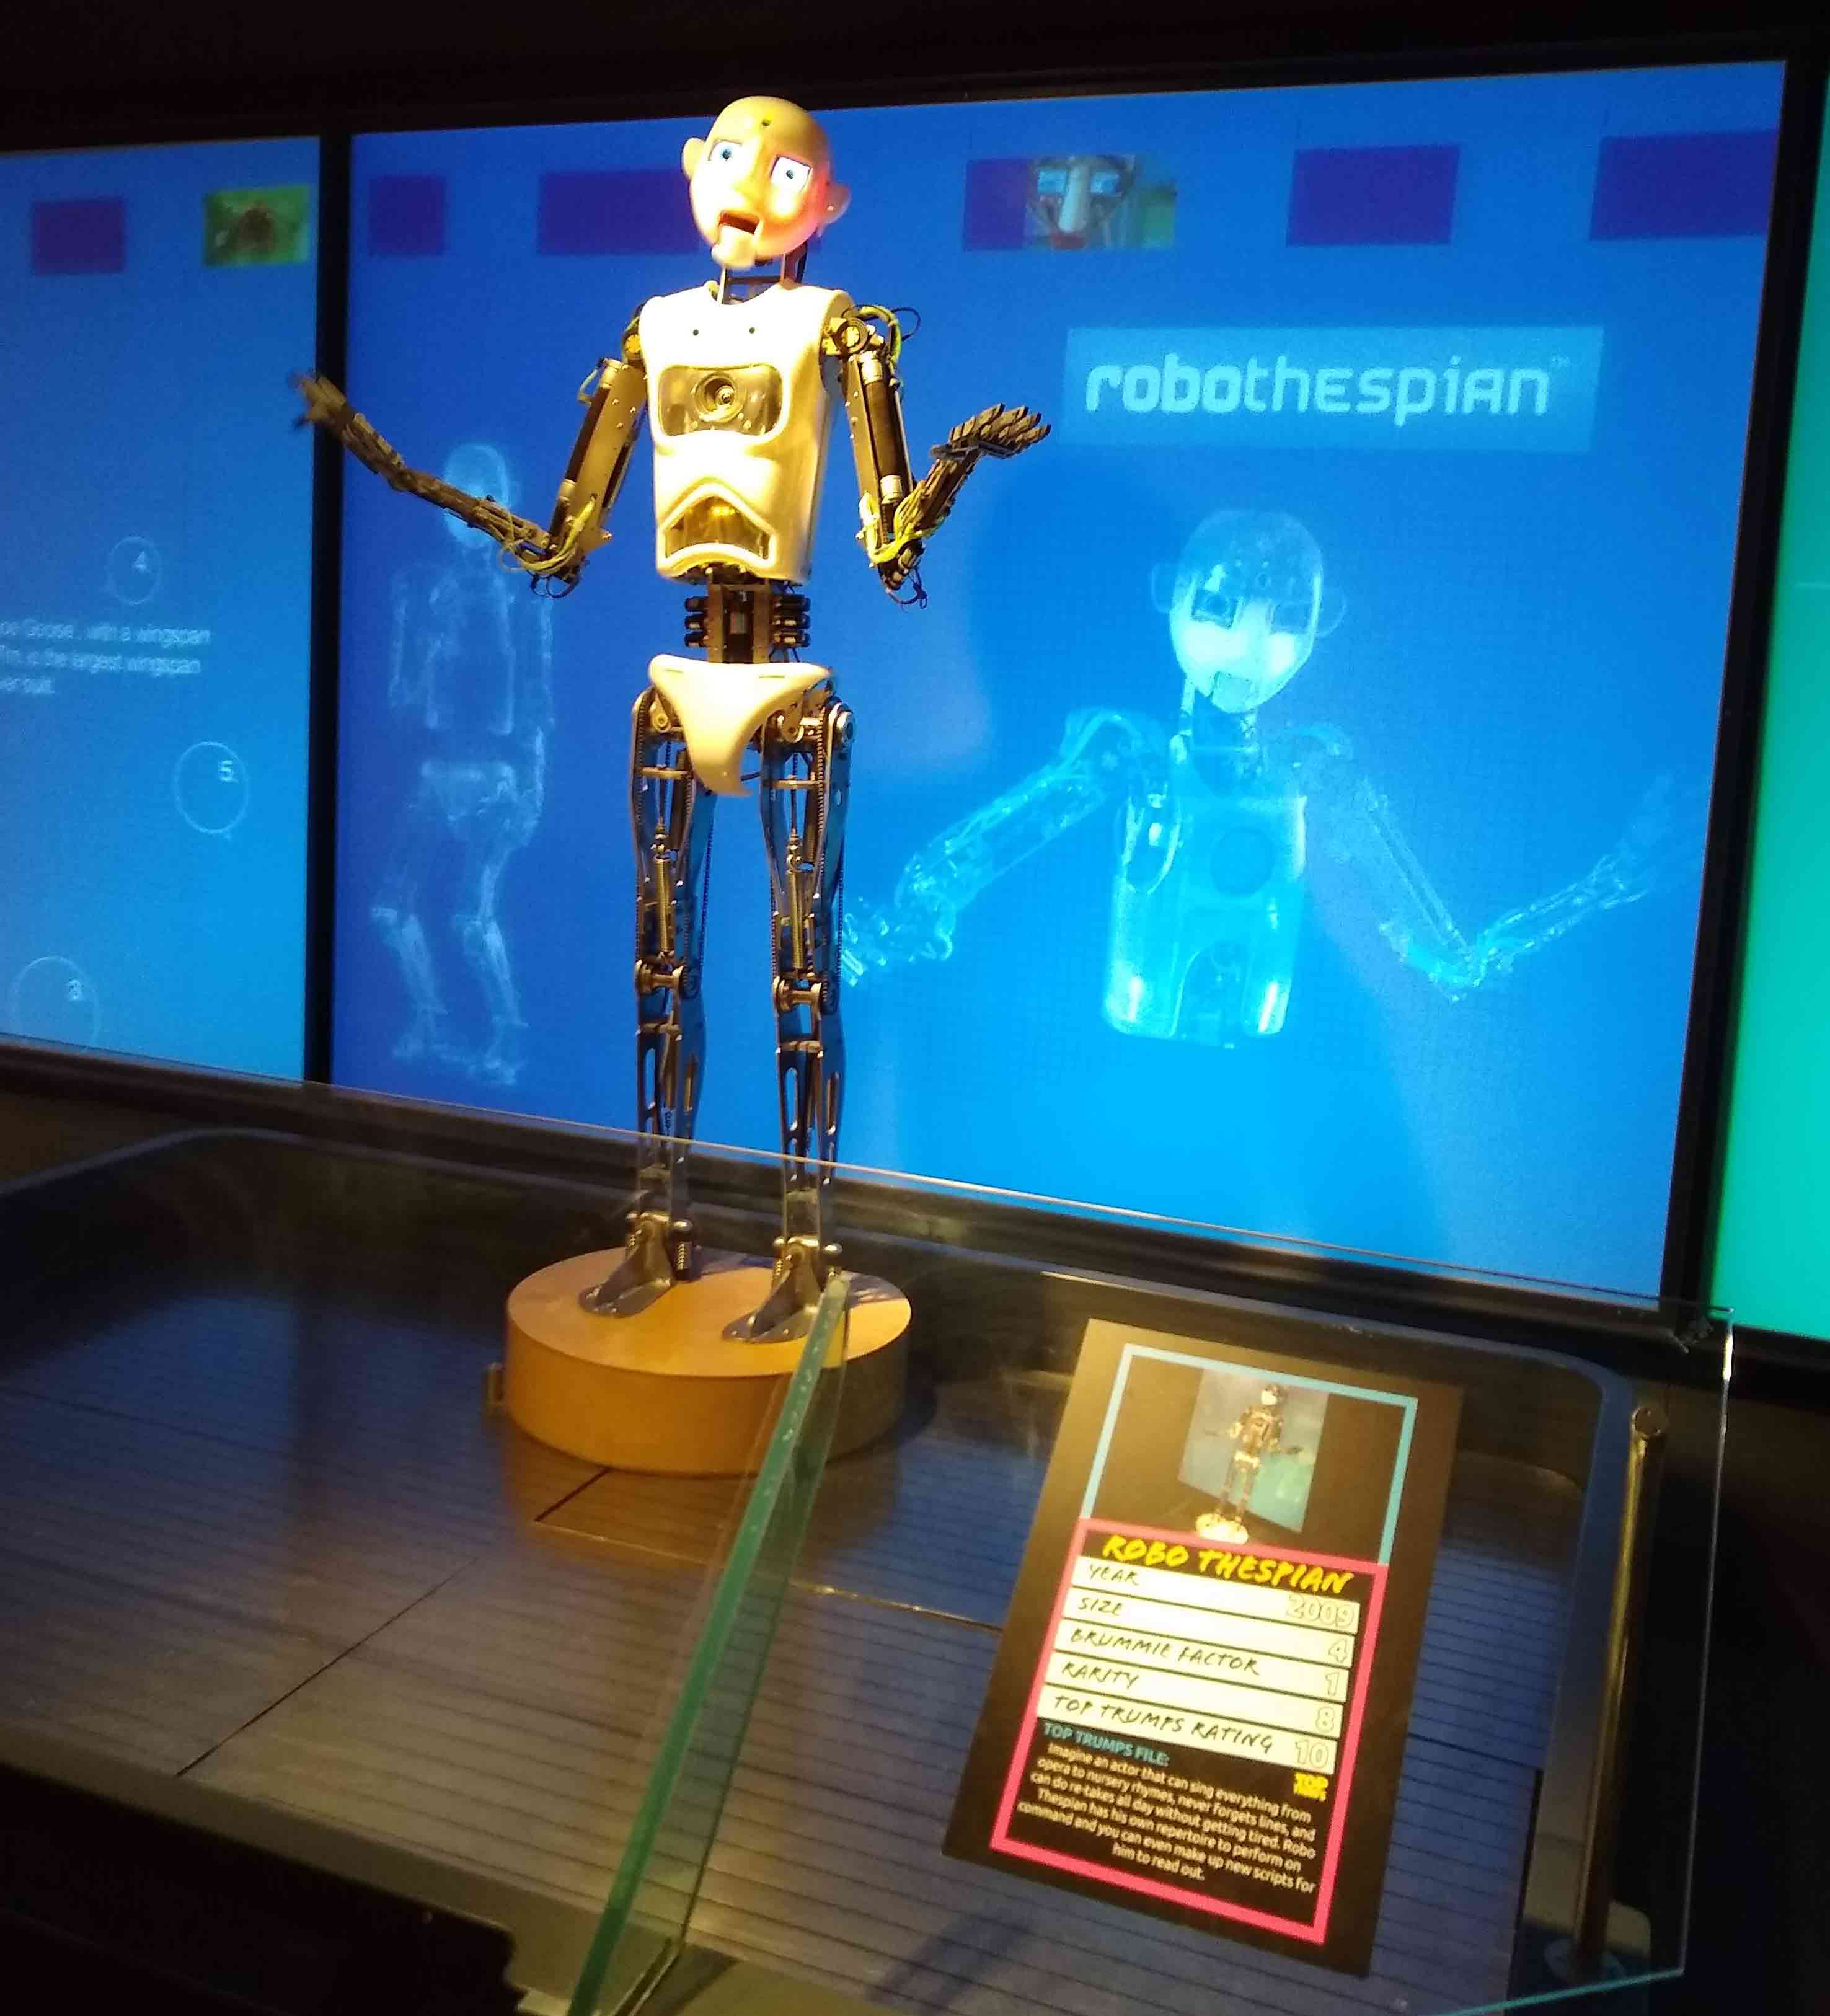 Robots in Birmingham’s ThinkTank Museum of Science: Robothespian